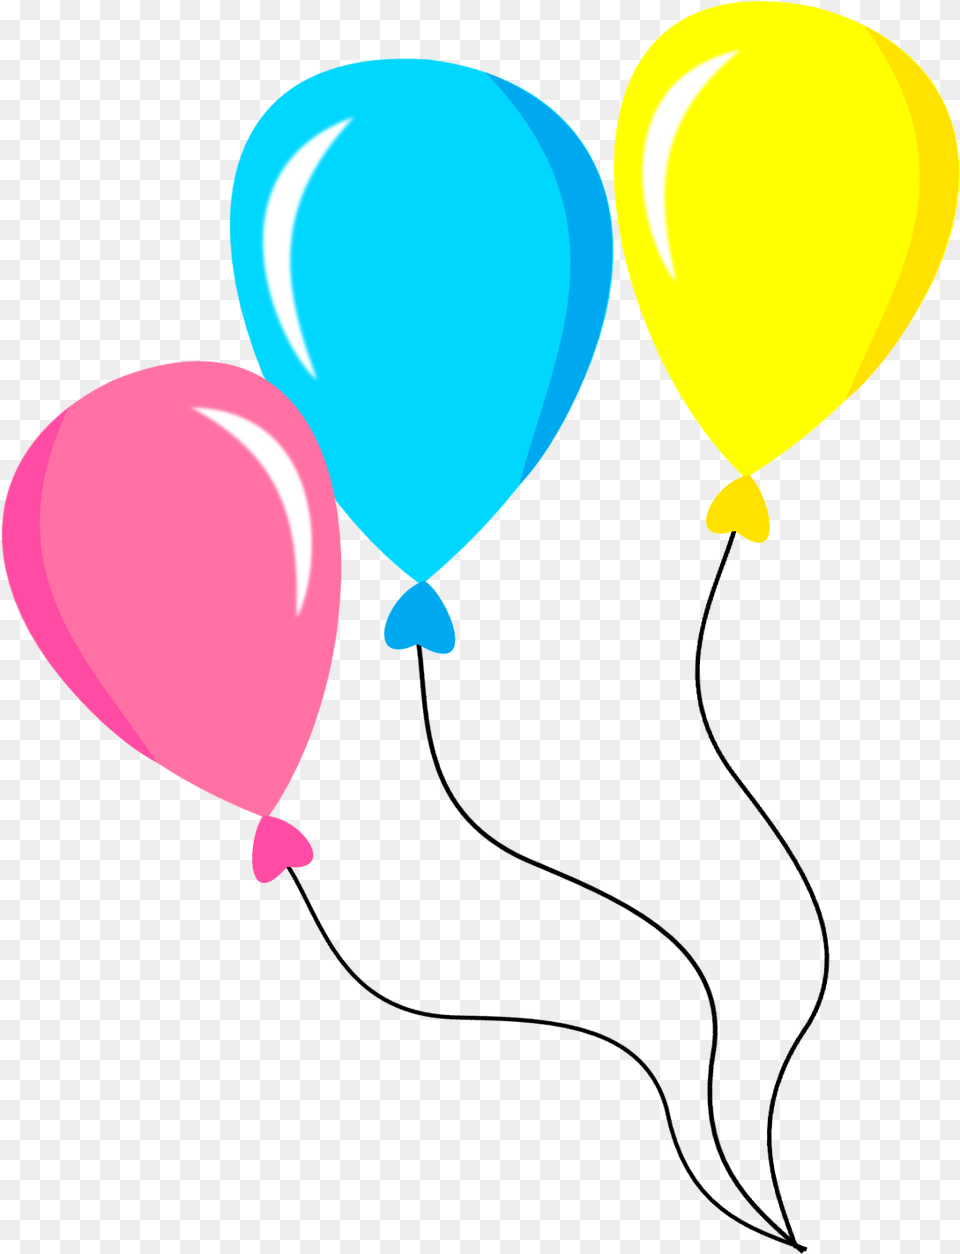 Balo De Festa Em Desenho, Balloon Free Transparent Png